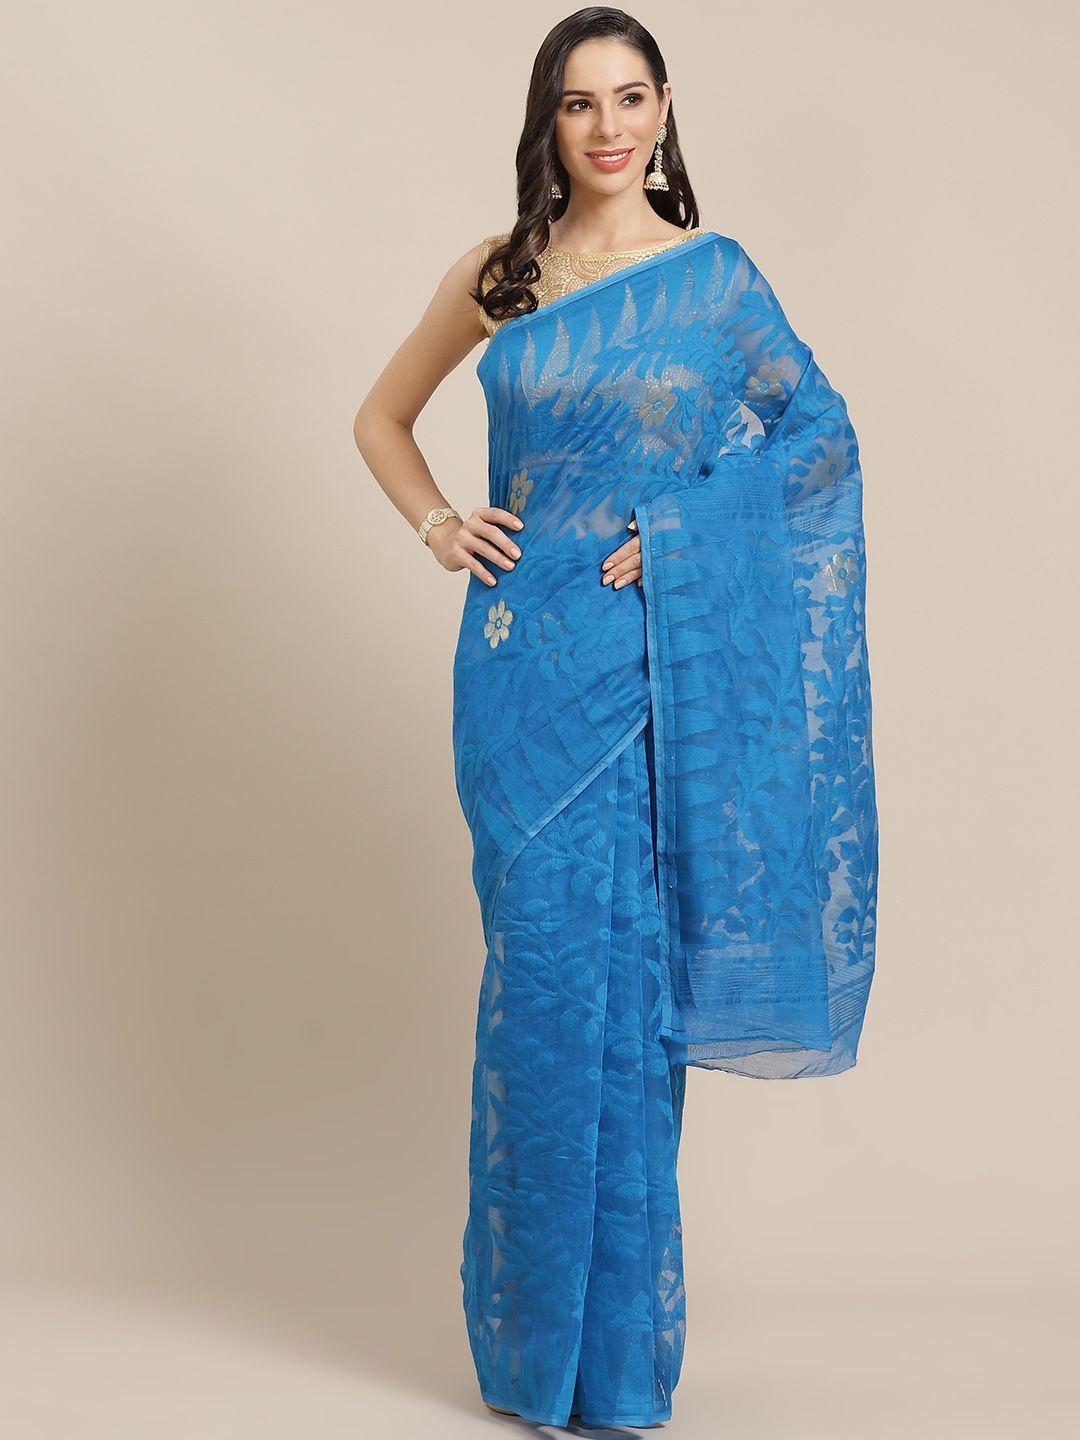 kalakari india blue & golden woven design jamdani handloom saree